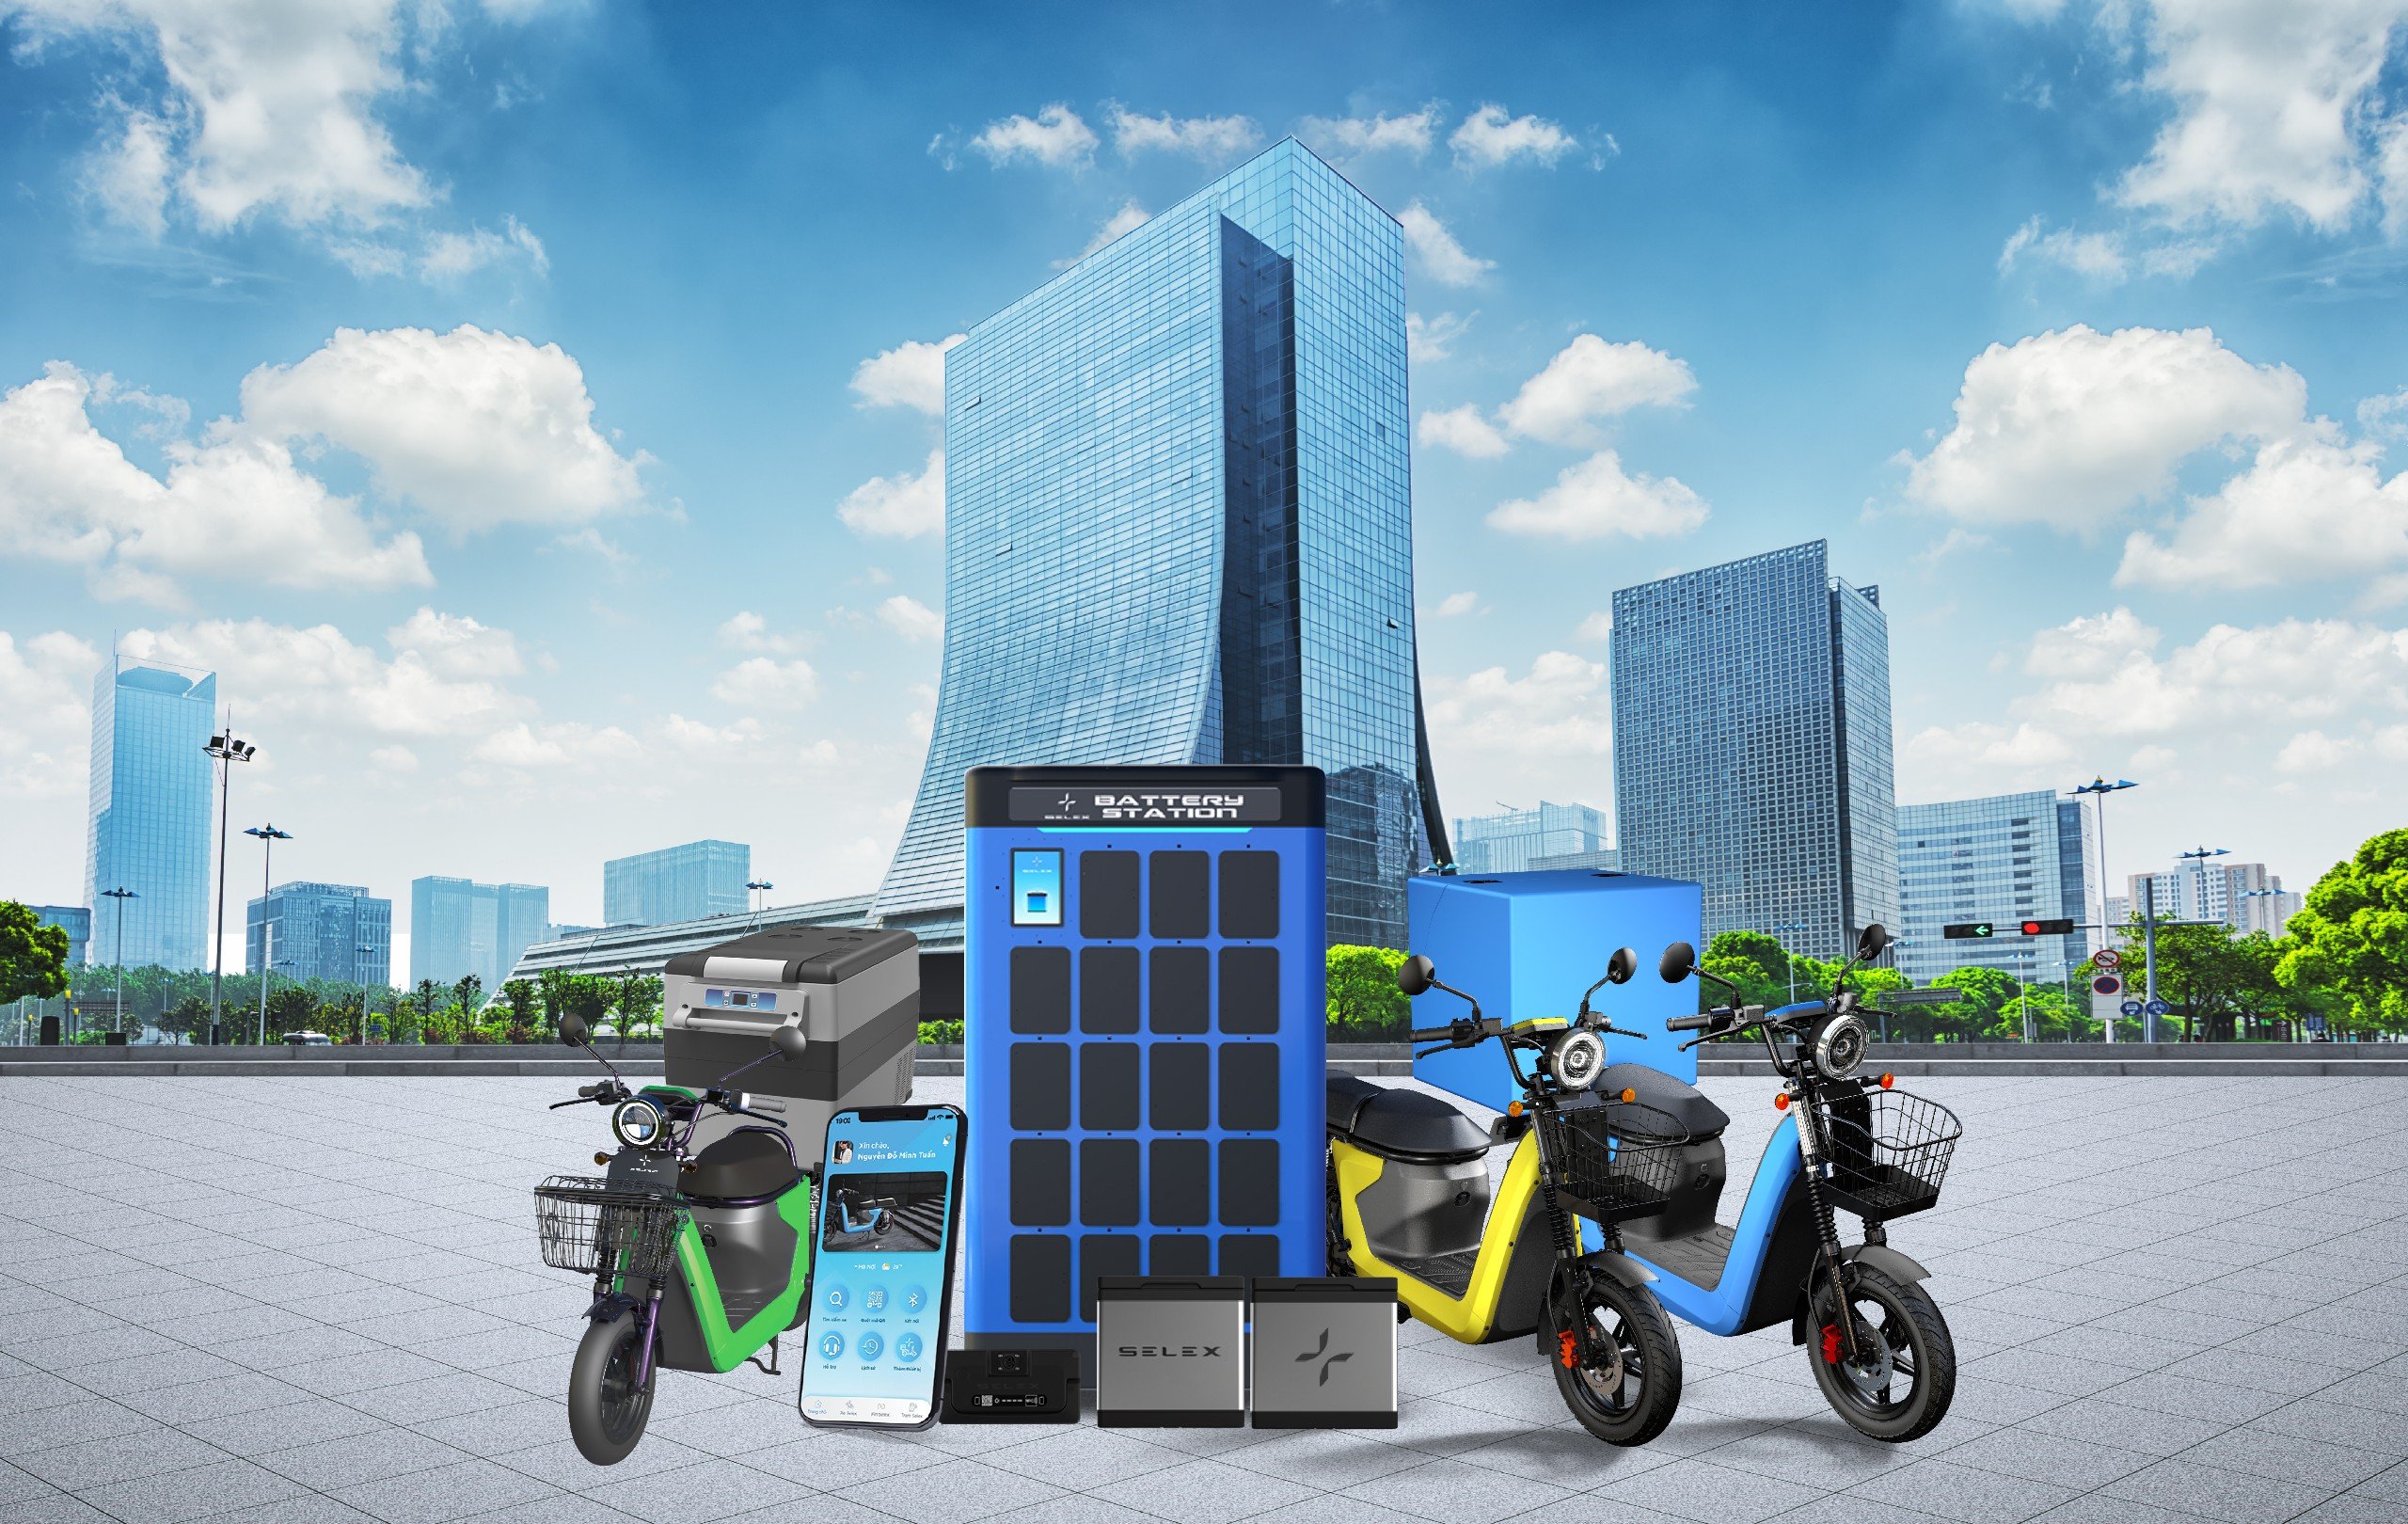 宝理塑料公司与越南 Selex Motors 公司合作开发电池装置.jpg